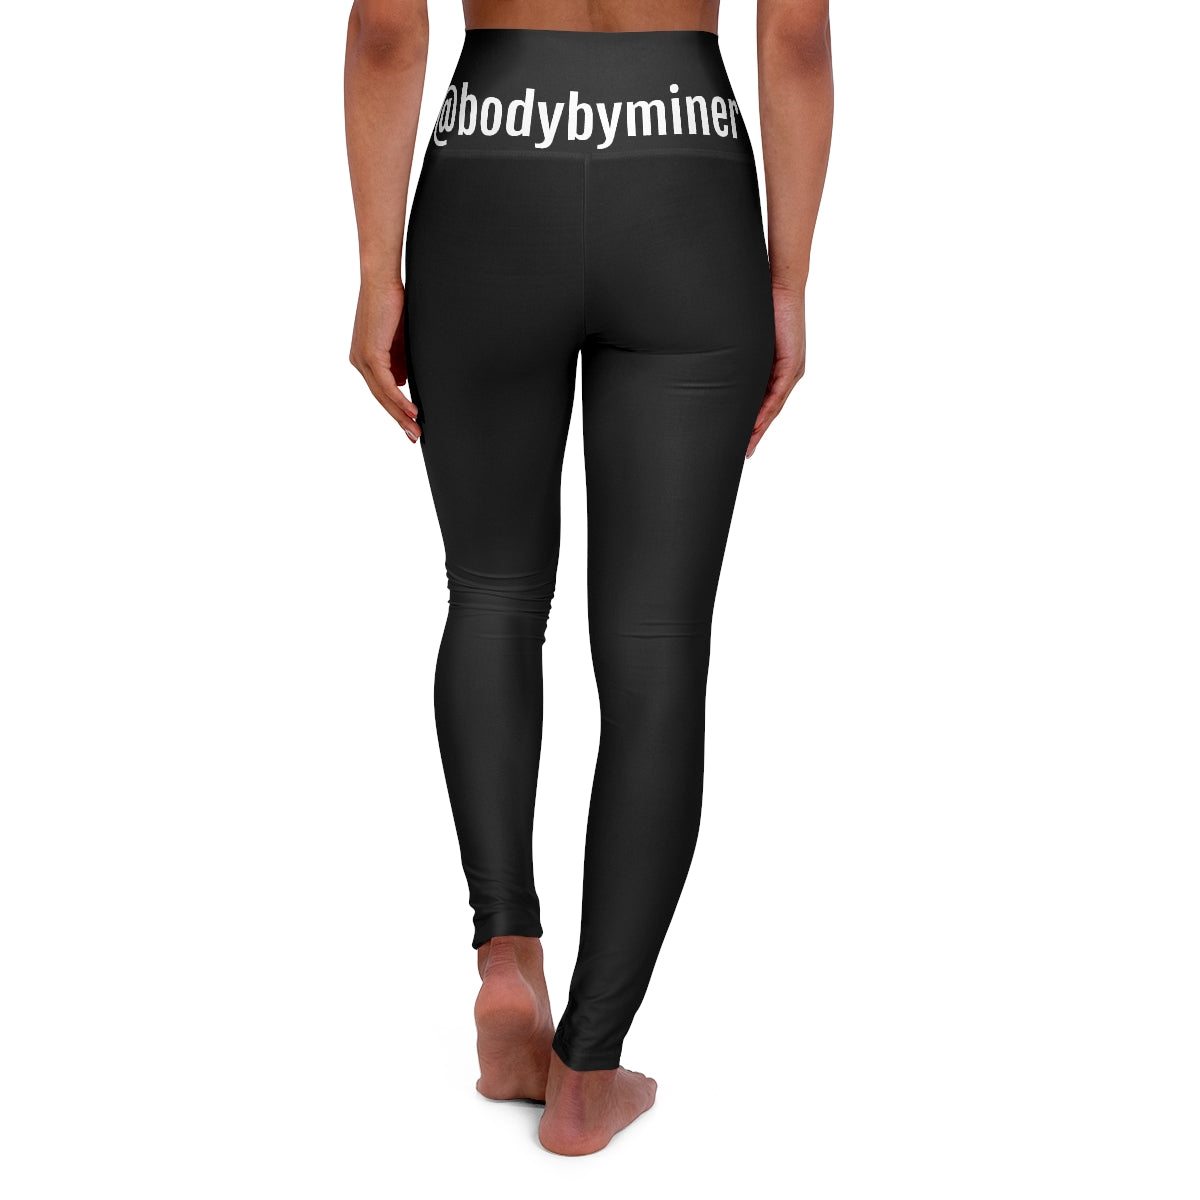 Black High Waisted- BodybyMiner Leggings